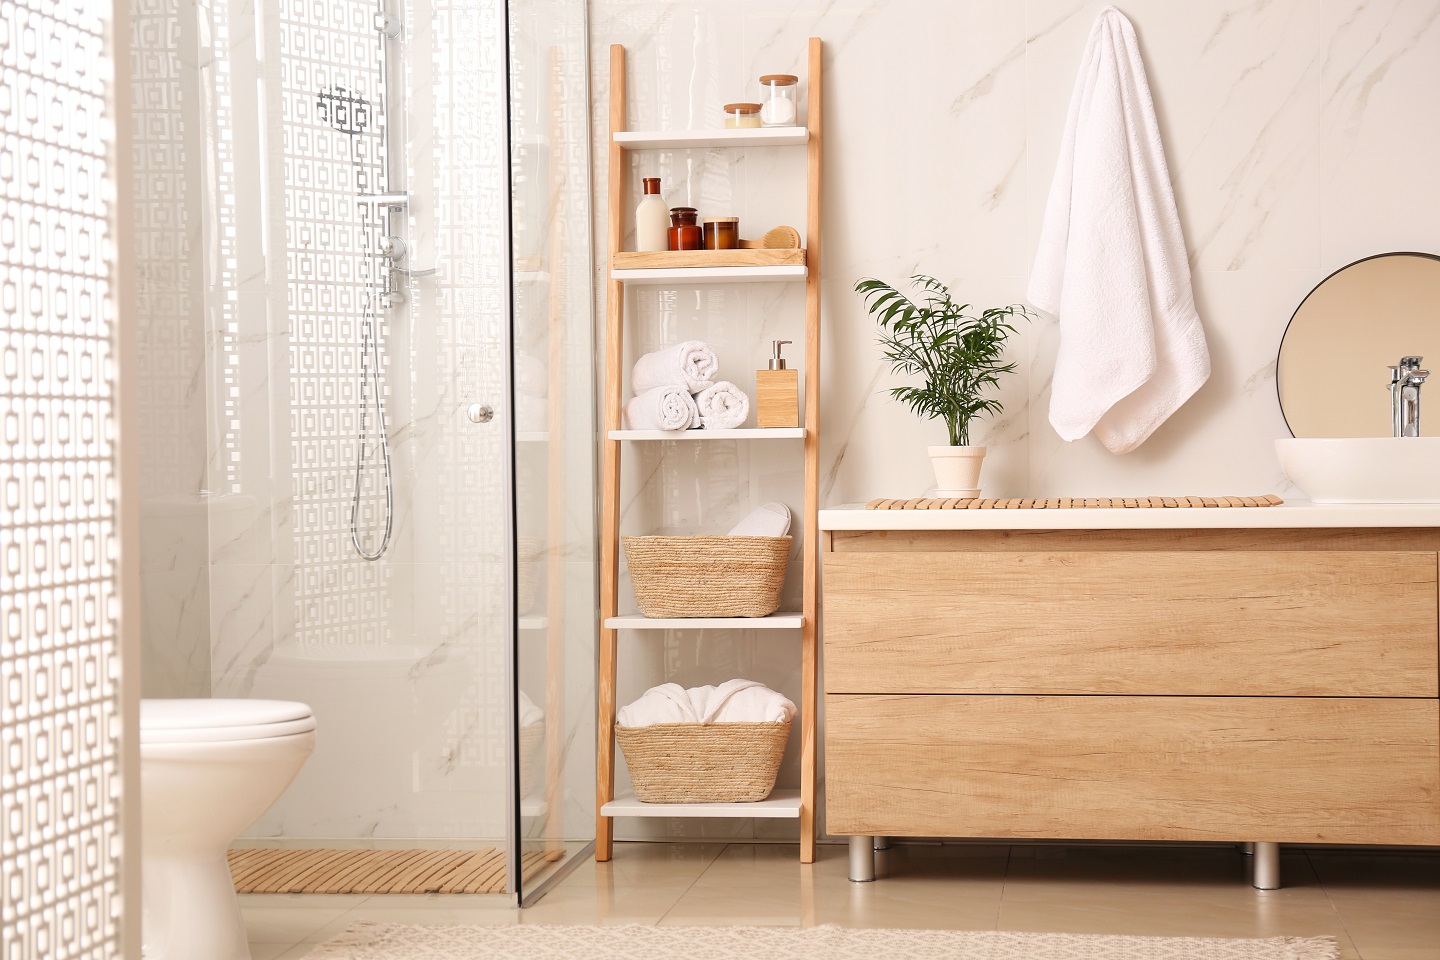 3 Innovative Ways to Utilize Bathroom Storage Space